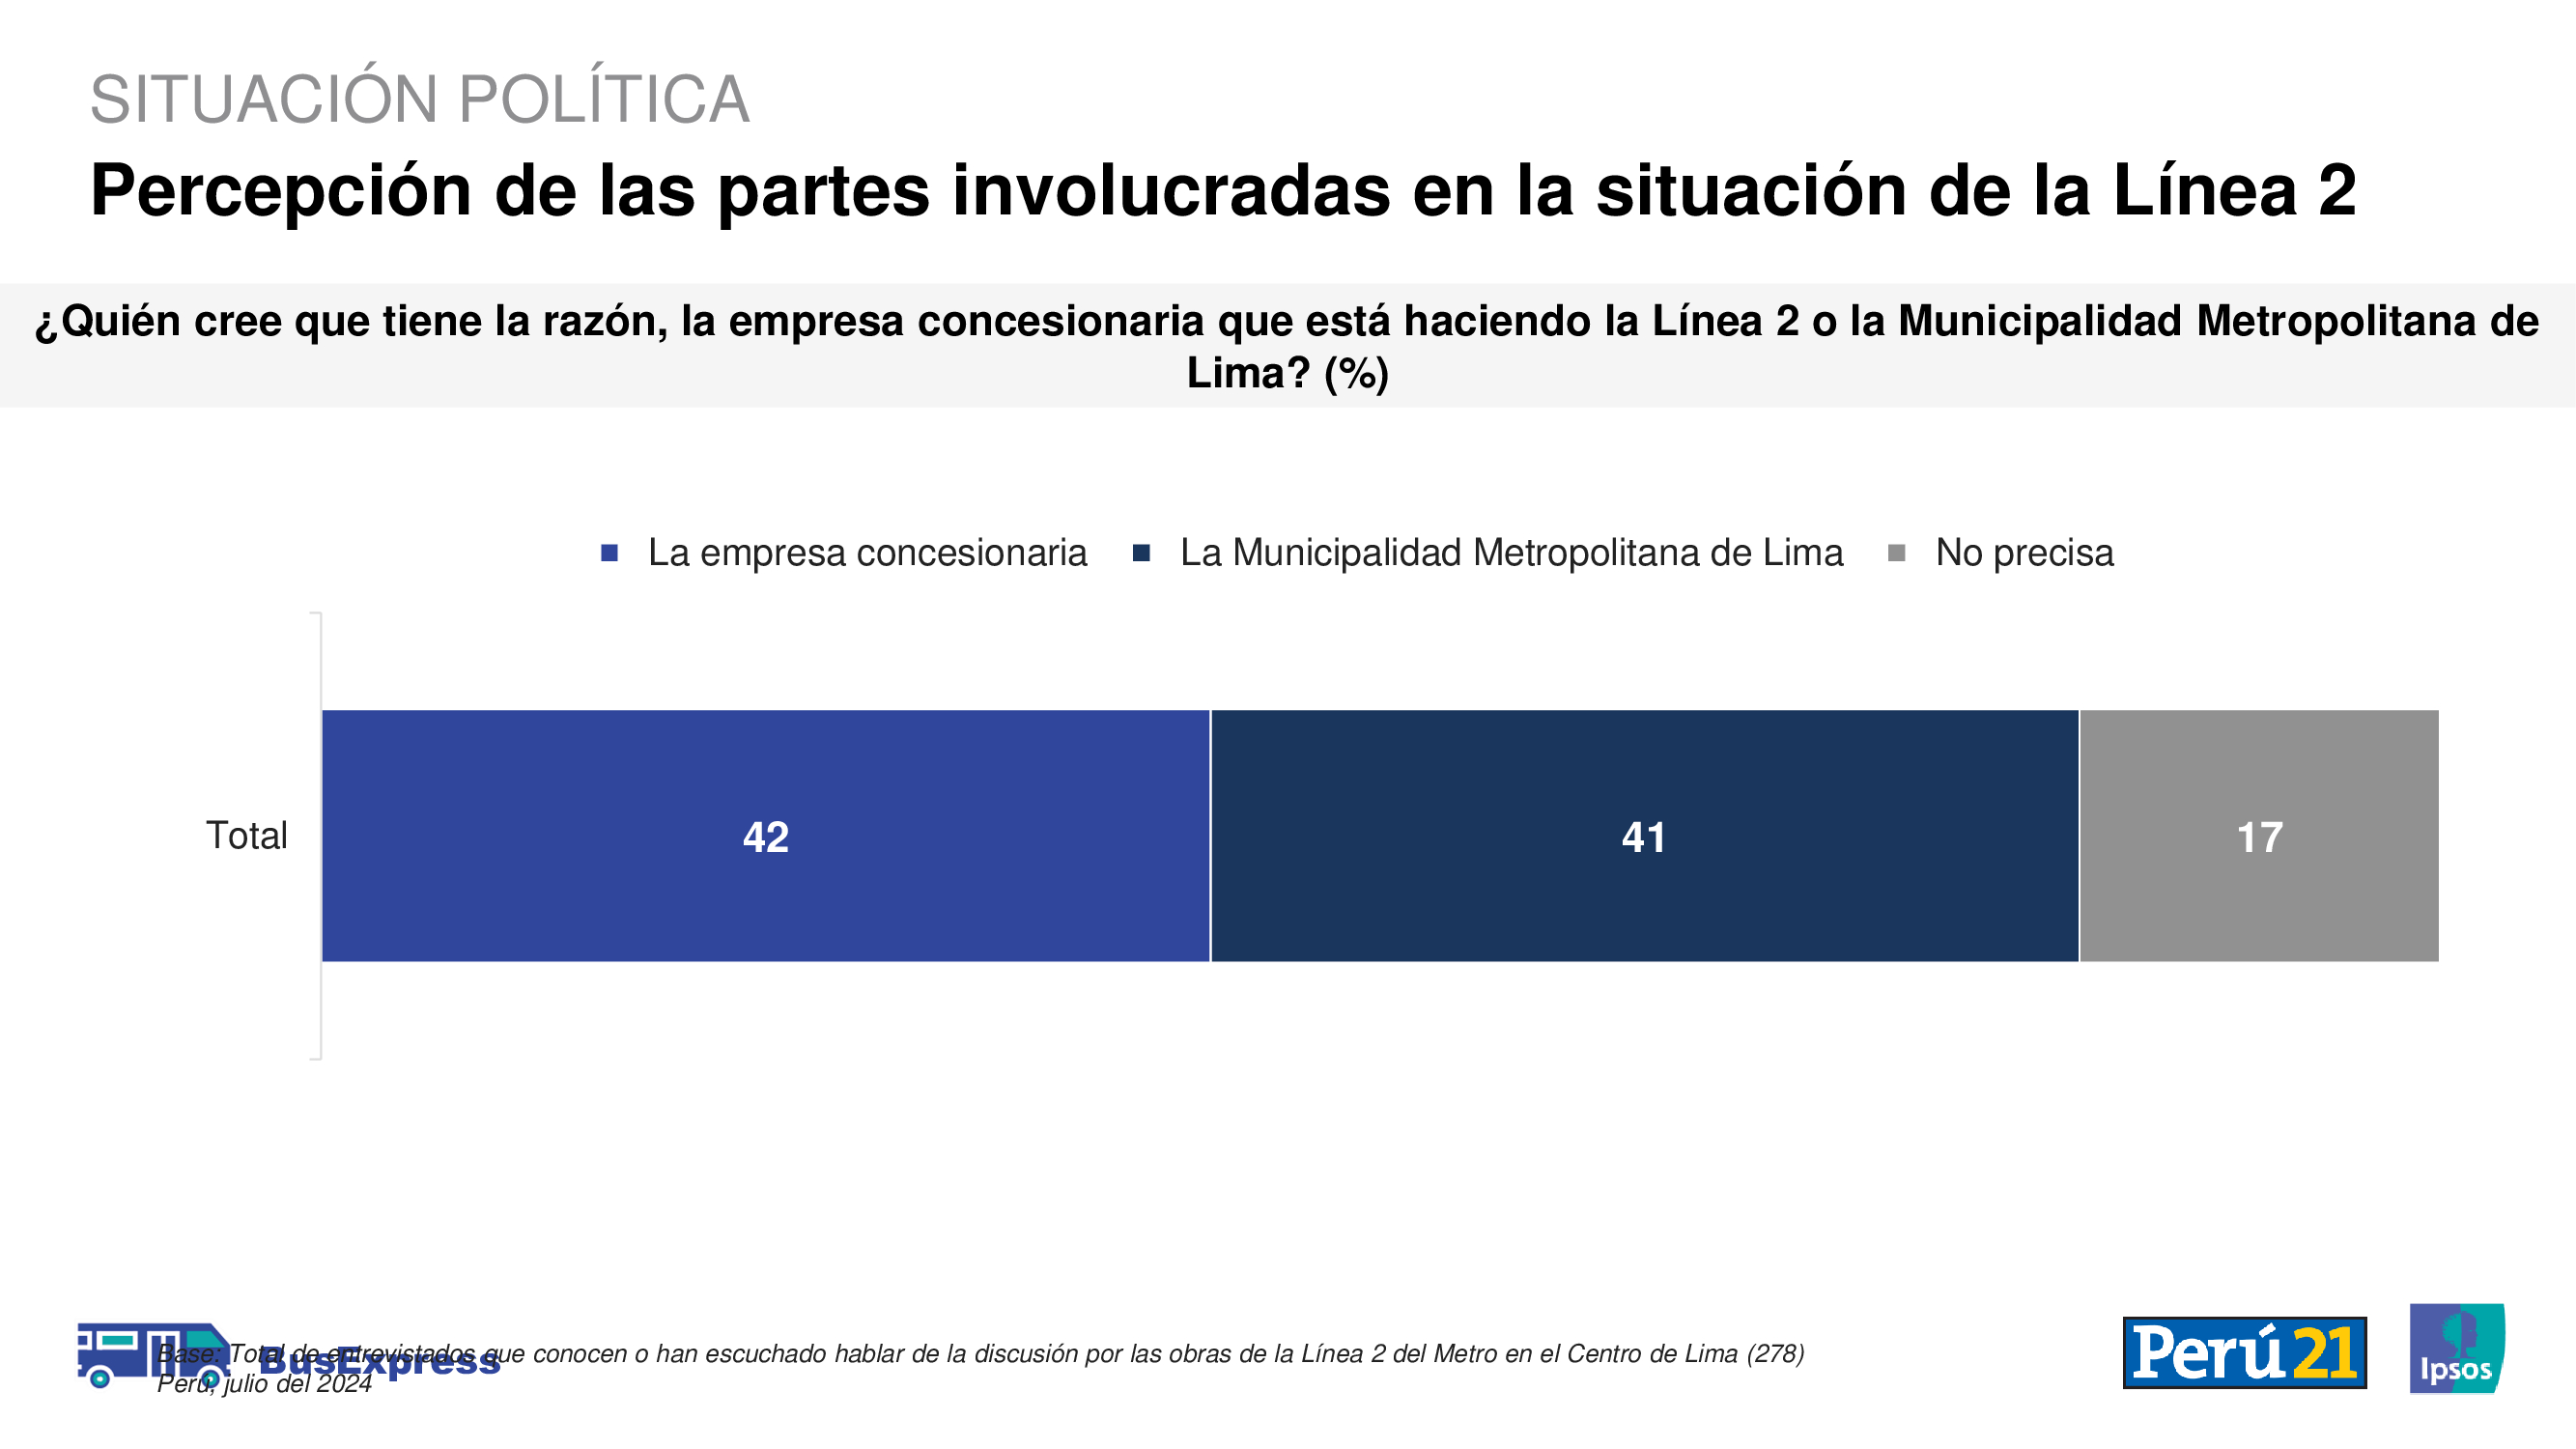 Encuesta Ipsos: El 42% cree que la concesionaria del Metro de Lima tiene la razón en el  impase generado durante en cierre de las vías en el Centro de Lima.